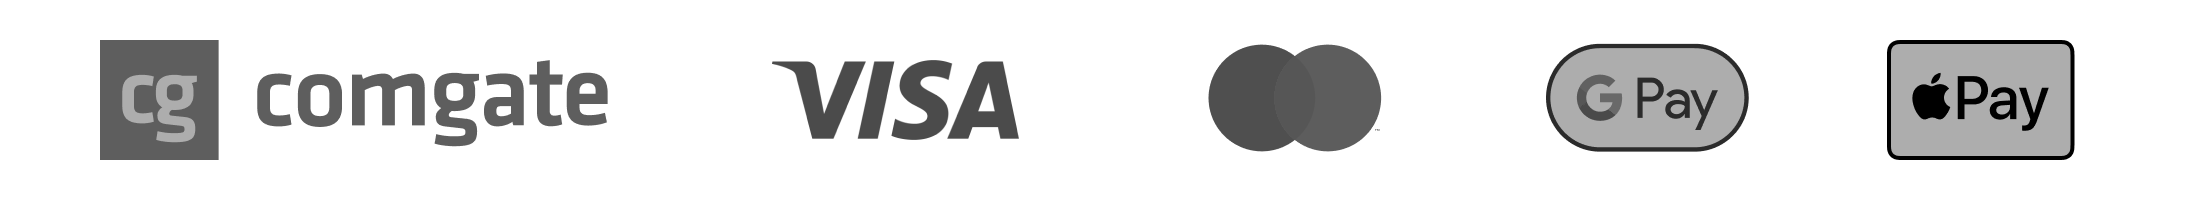 logo ComGate